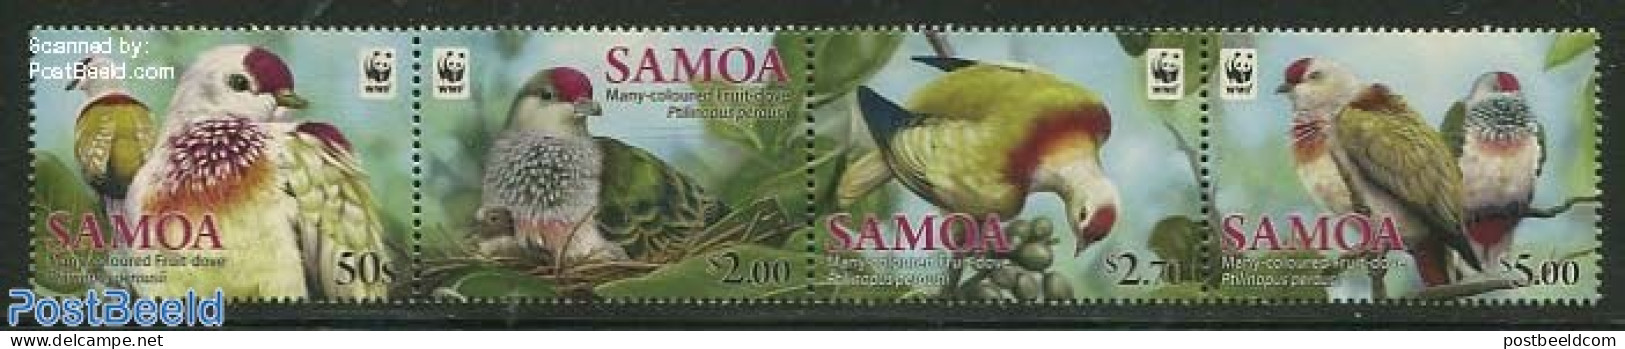 Samoa 2011 Fruit-Dove Of Samoa, WWF 4v, Mint NH, Nature - Birds - World Wildlife Fund (WWF) - Samoa